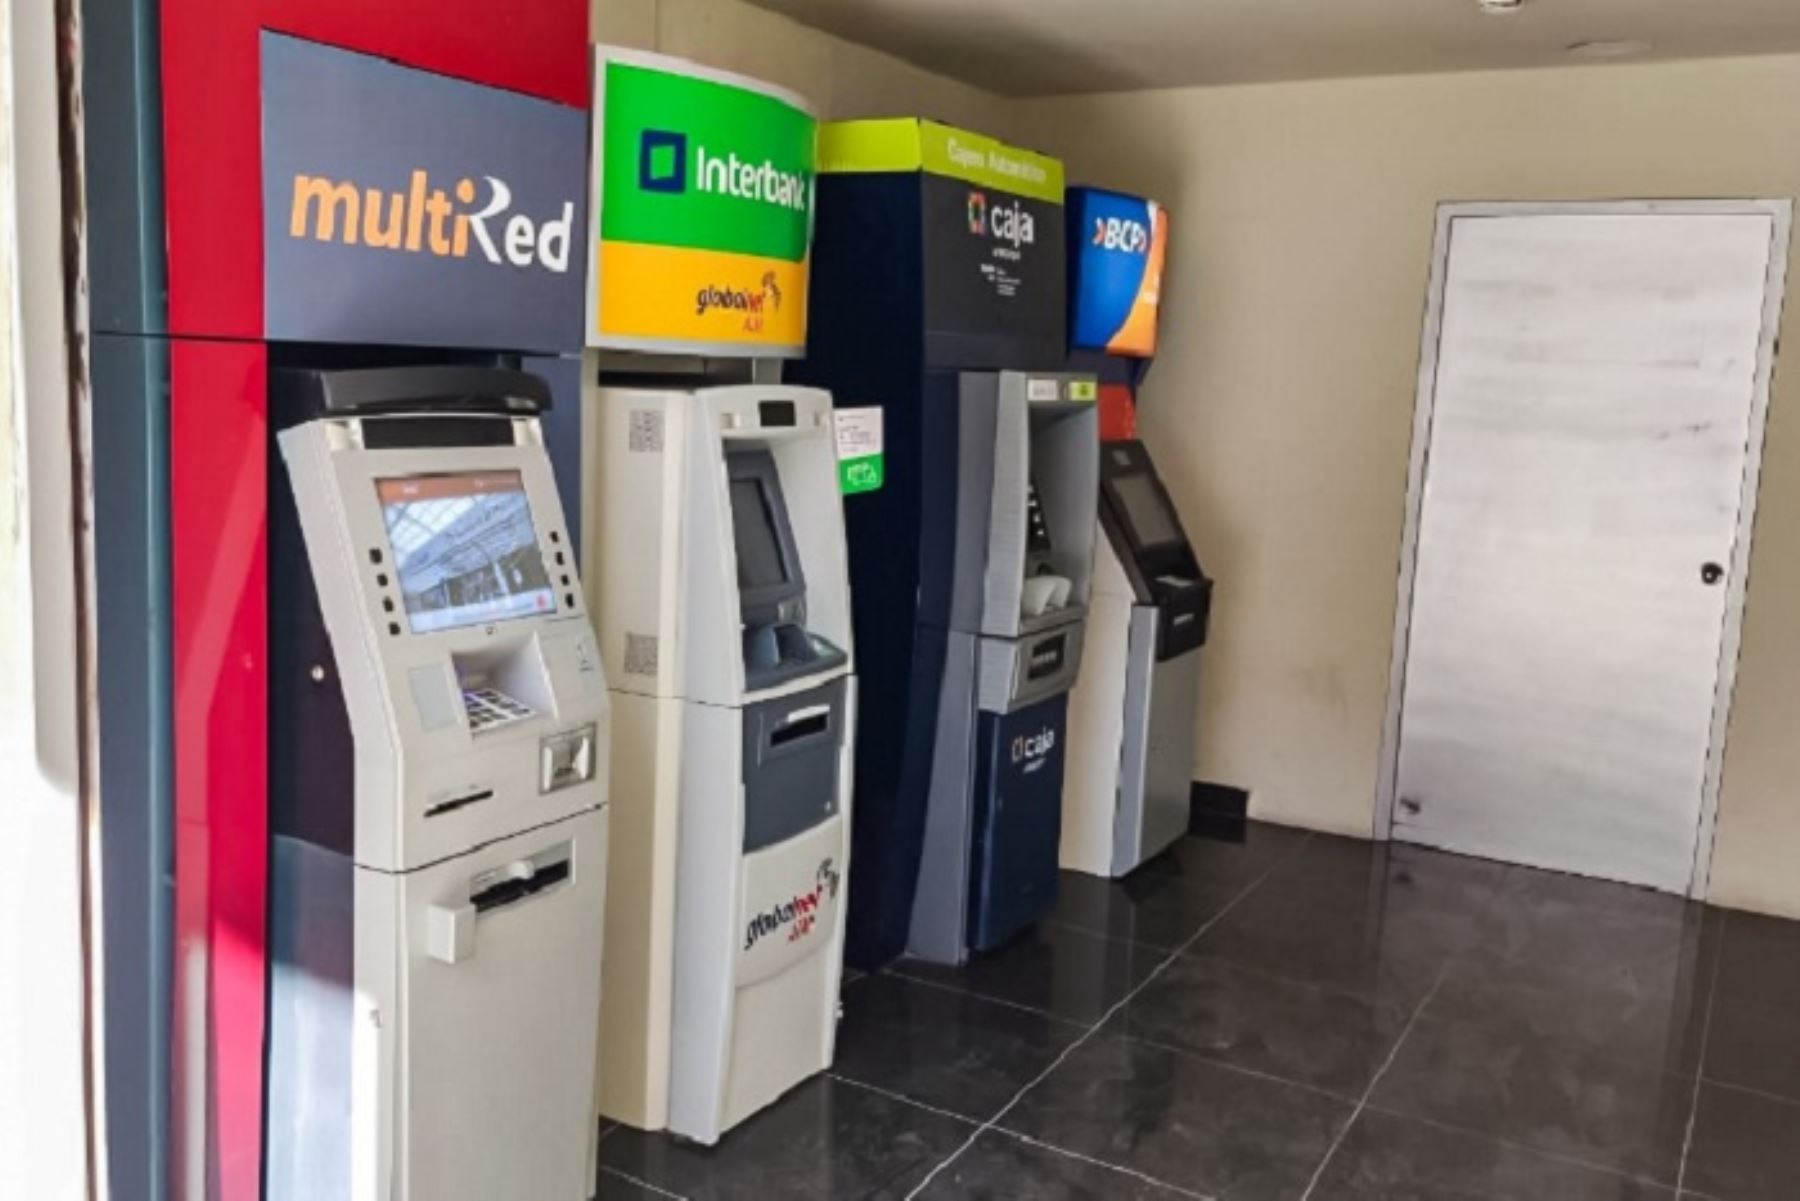 Banco de la Nación instala nuevo cajero MultiRed en la ciudad de Moquegua